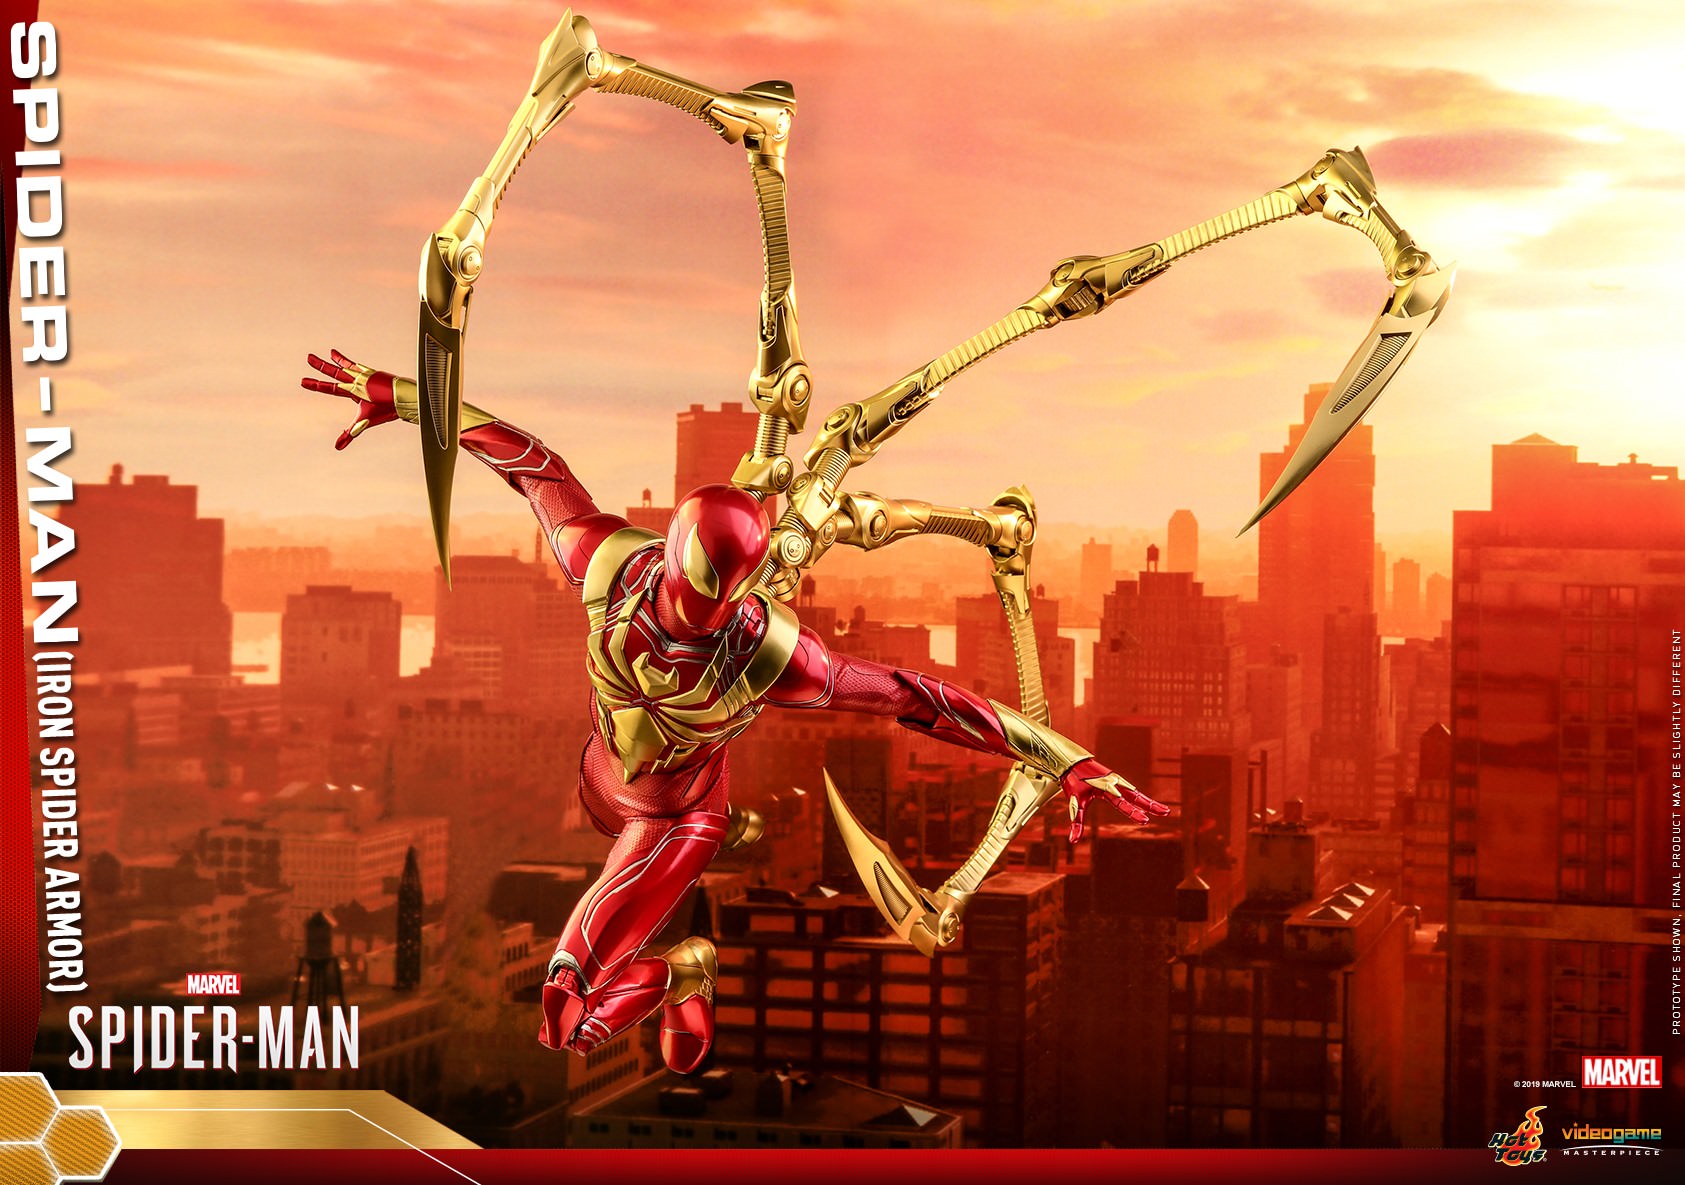 SPIDER-MAN (IRON SPIDER ARMOR)